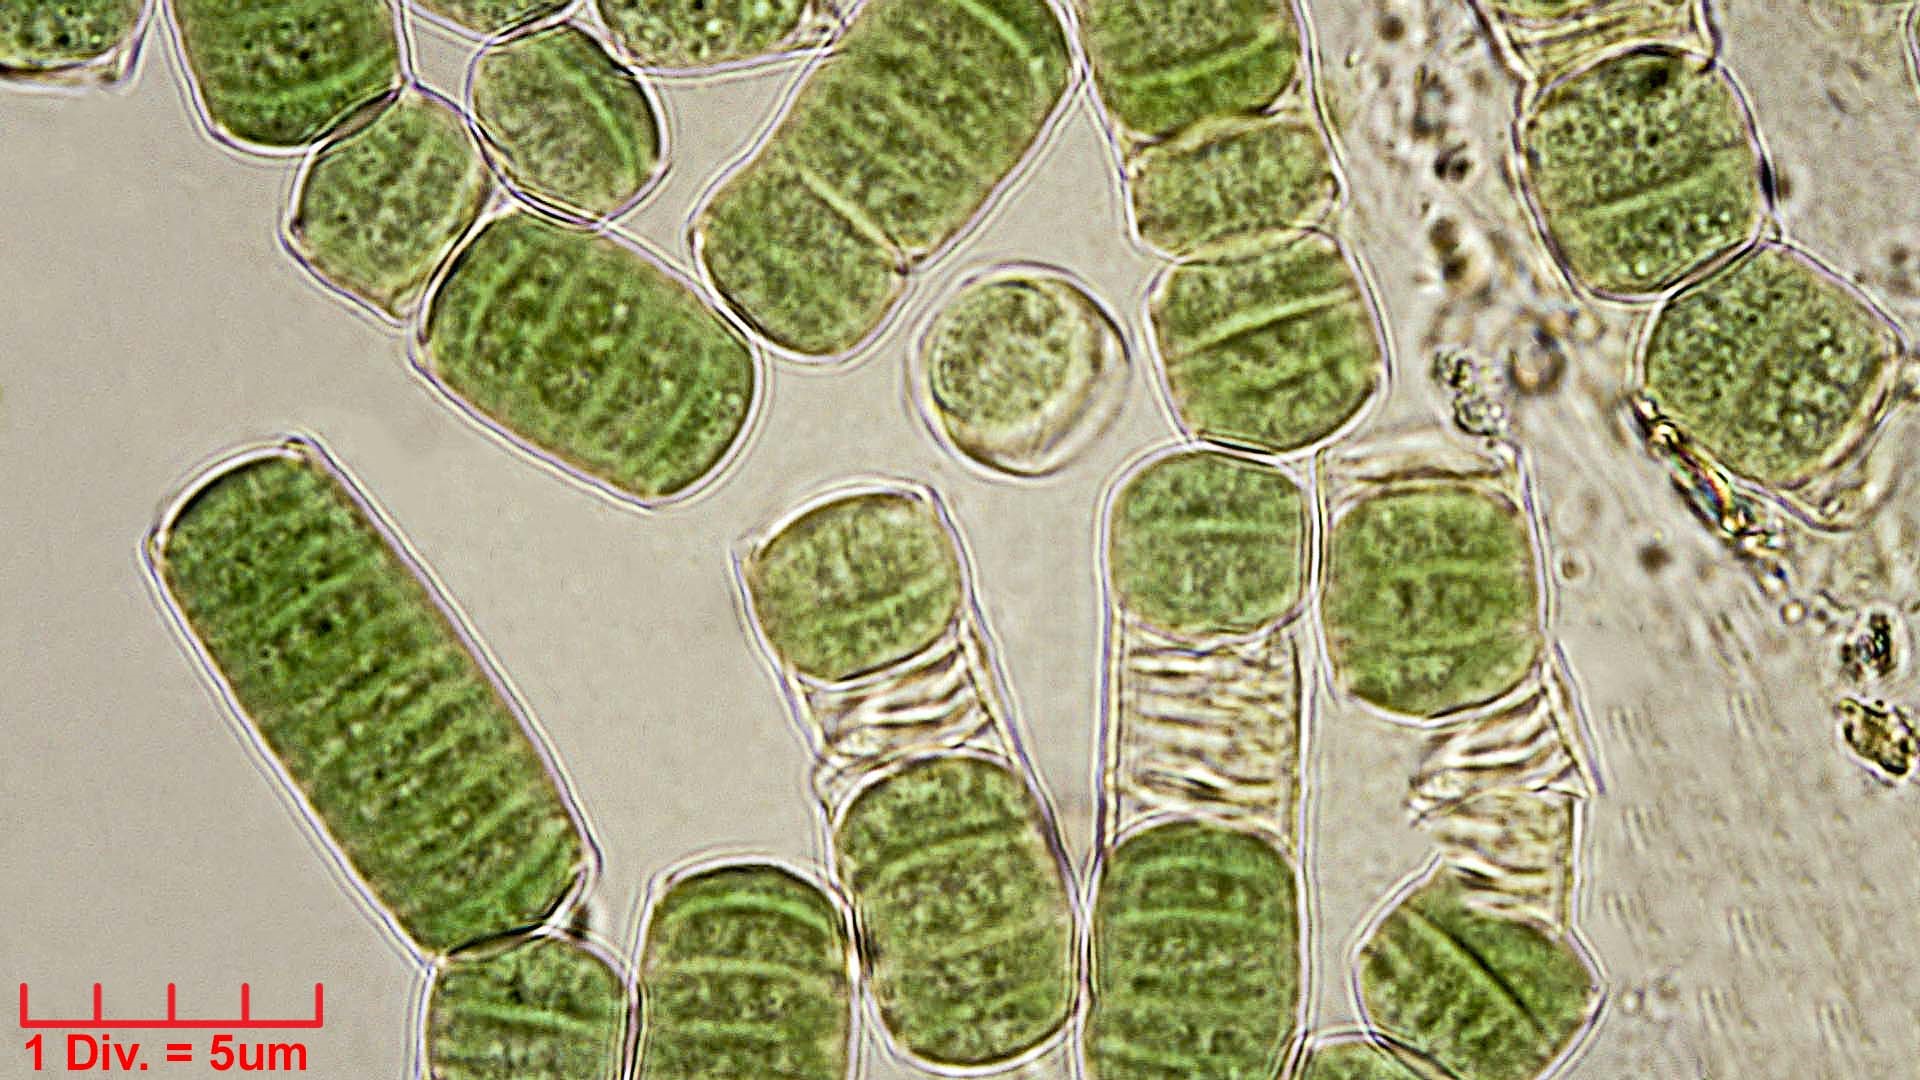 Cyanobacteria/Oscillatoriales/Oscillatoriaceae/Oscillatoria/curviceps/oscillatoria-curviceps-180.jpg